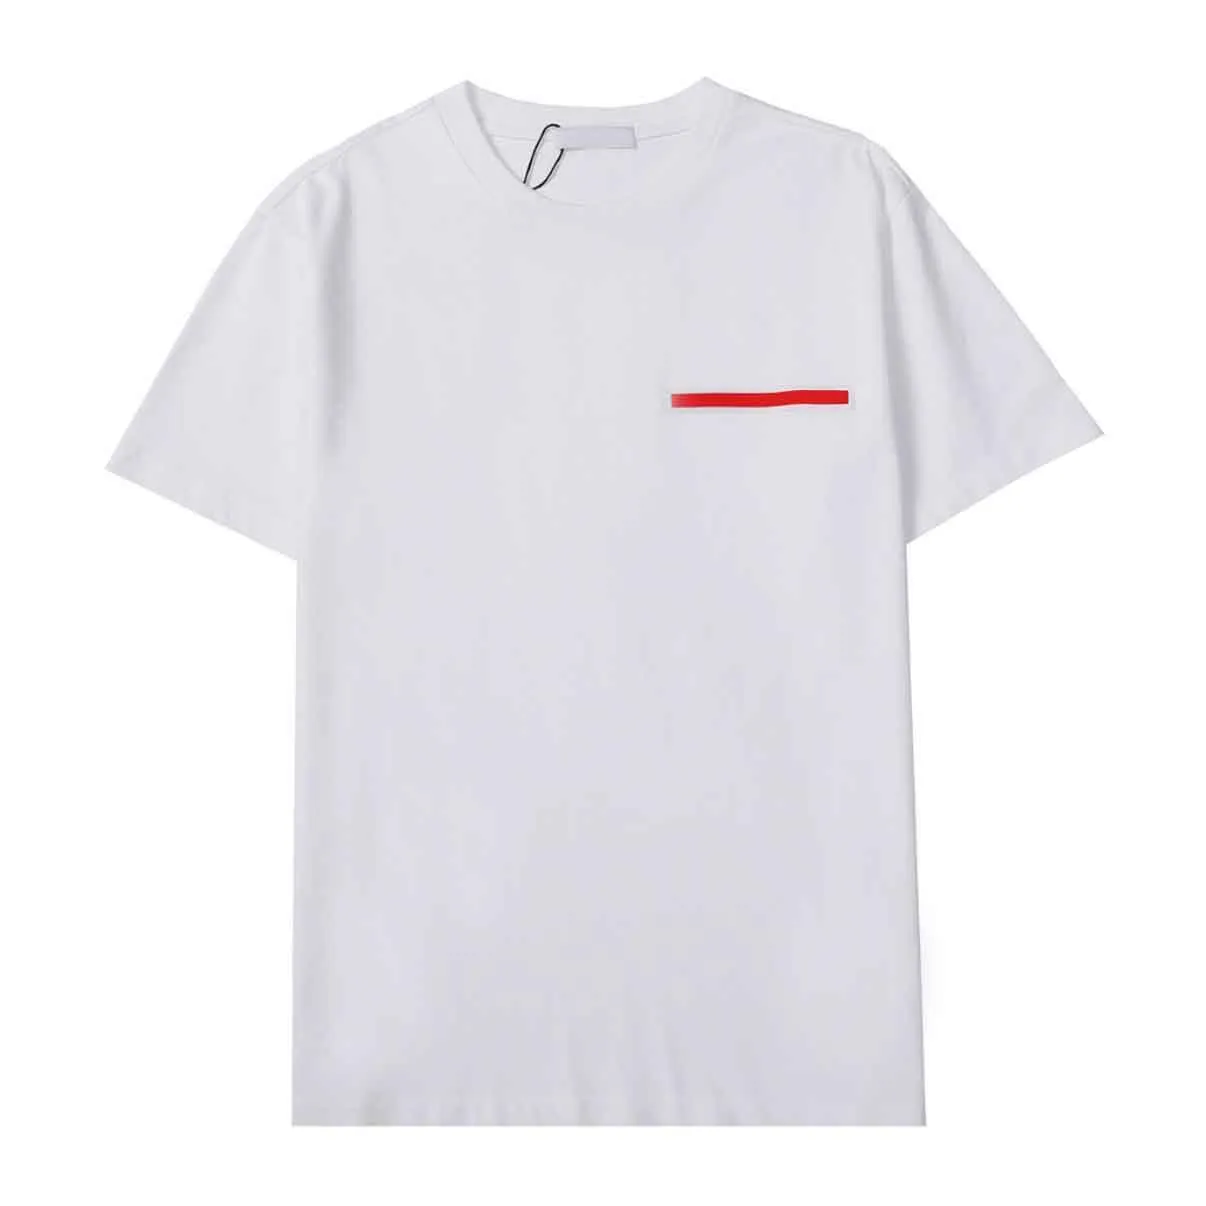 T-shirt da uomo Girocollo ricamato e stampato in stile polare estivo con puro cotone street 2w2